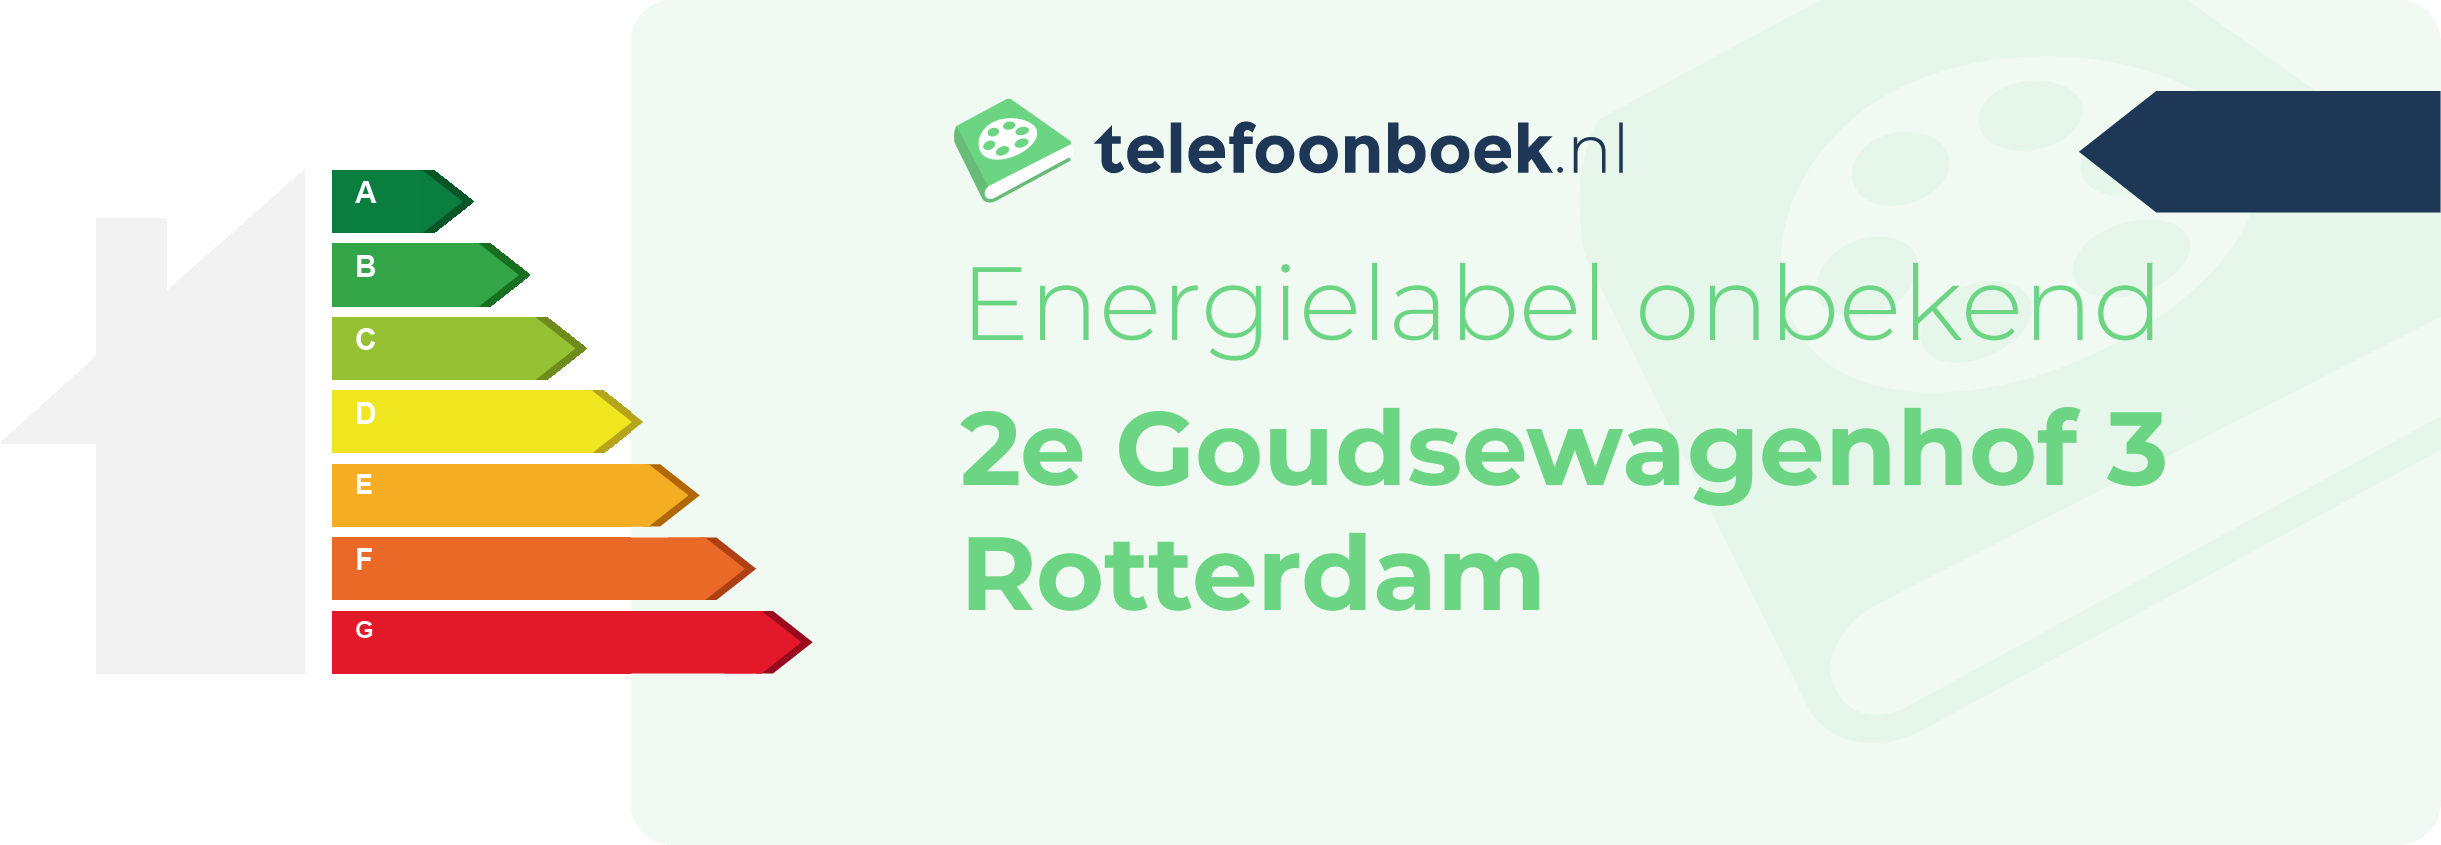 Energielabel 2e Goudsewagenhof 3 Rotterdam